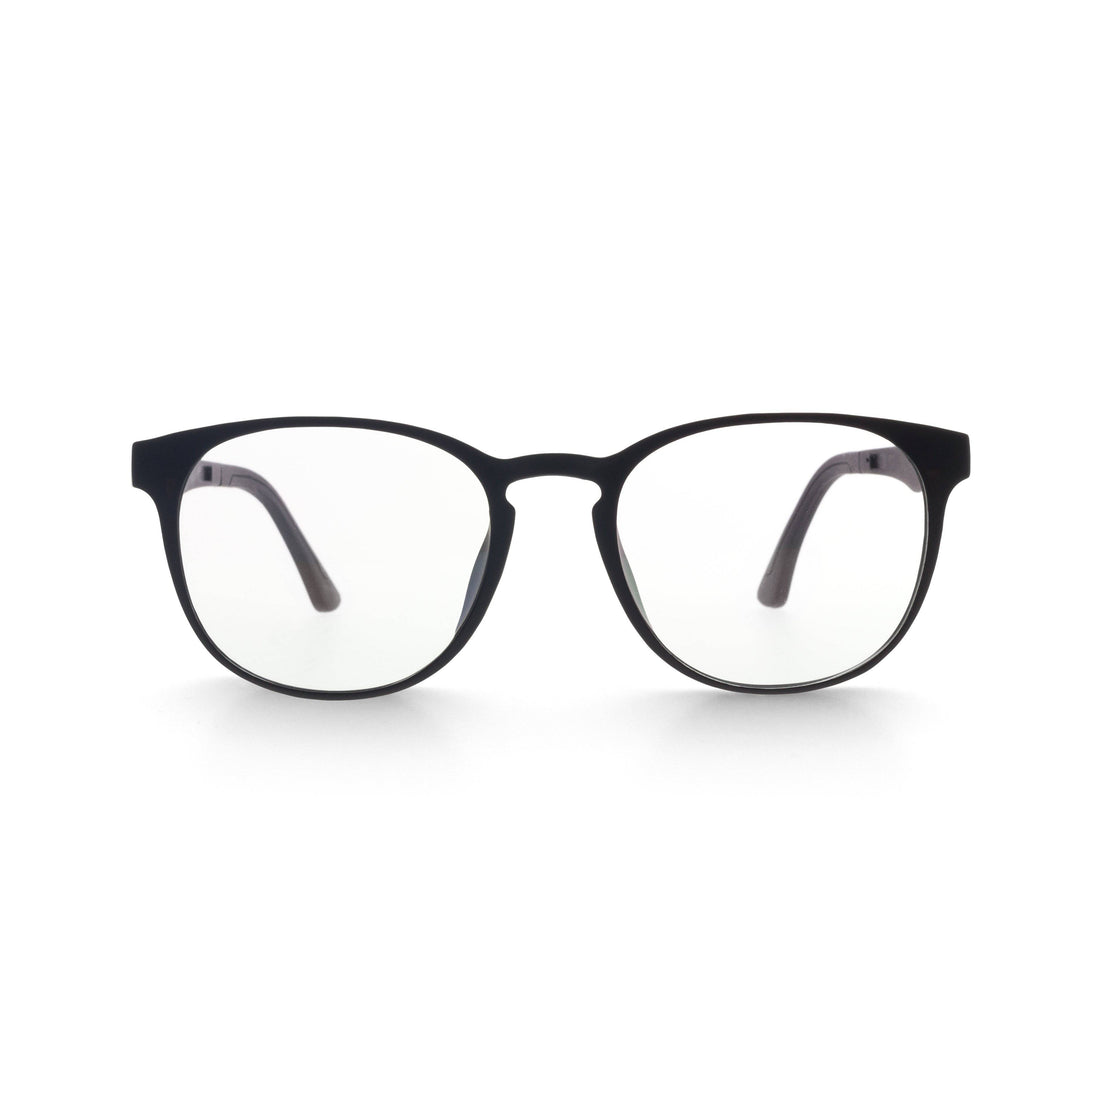 Gafas de ver montura en ultem con suplemento de lente para adaptarla cuando estés en el exterior. Gafas de ver con montura + lentes desde 69€ en óptica LUPER Murcia